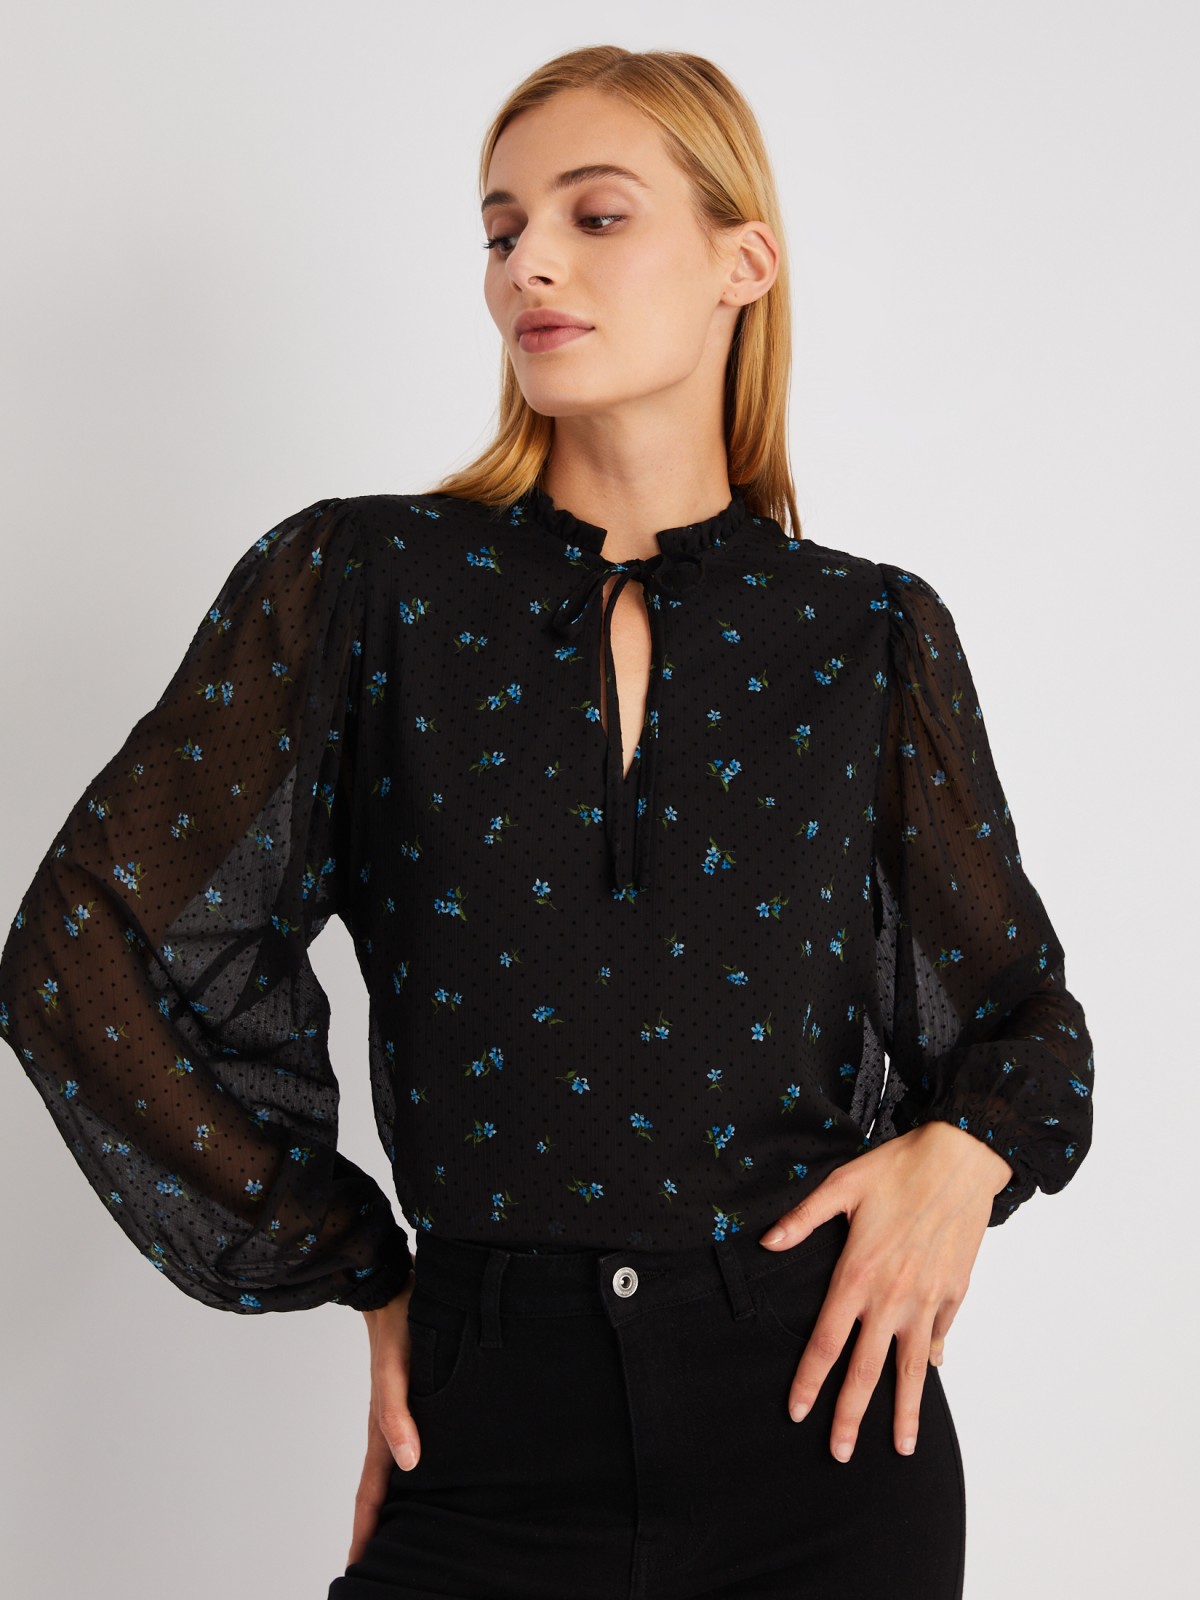 Блузка с завязками и цветочным принтом zolla 024111159183, размер XS